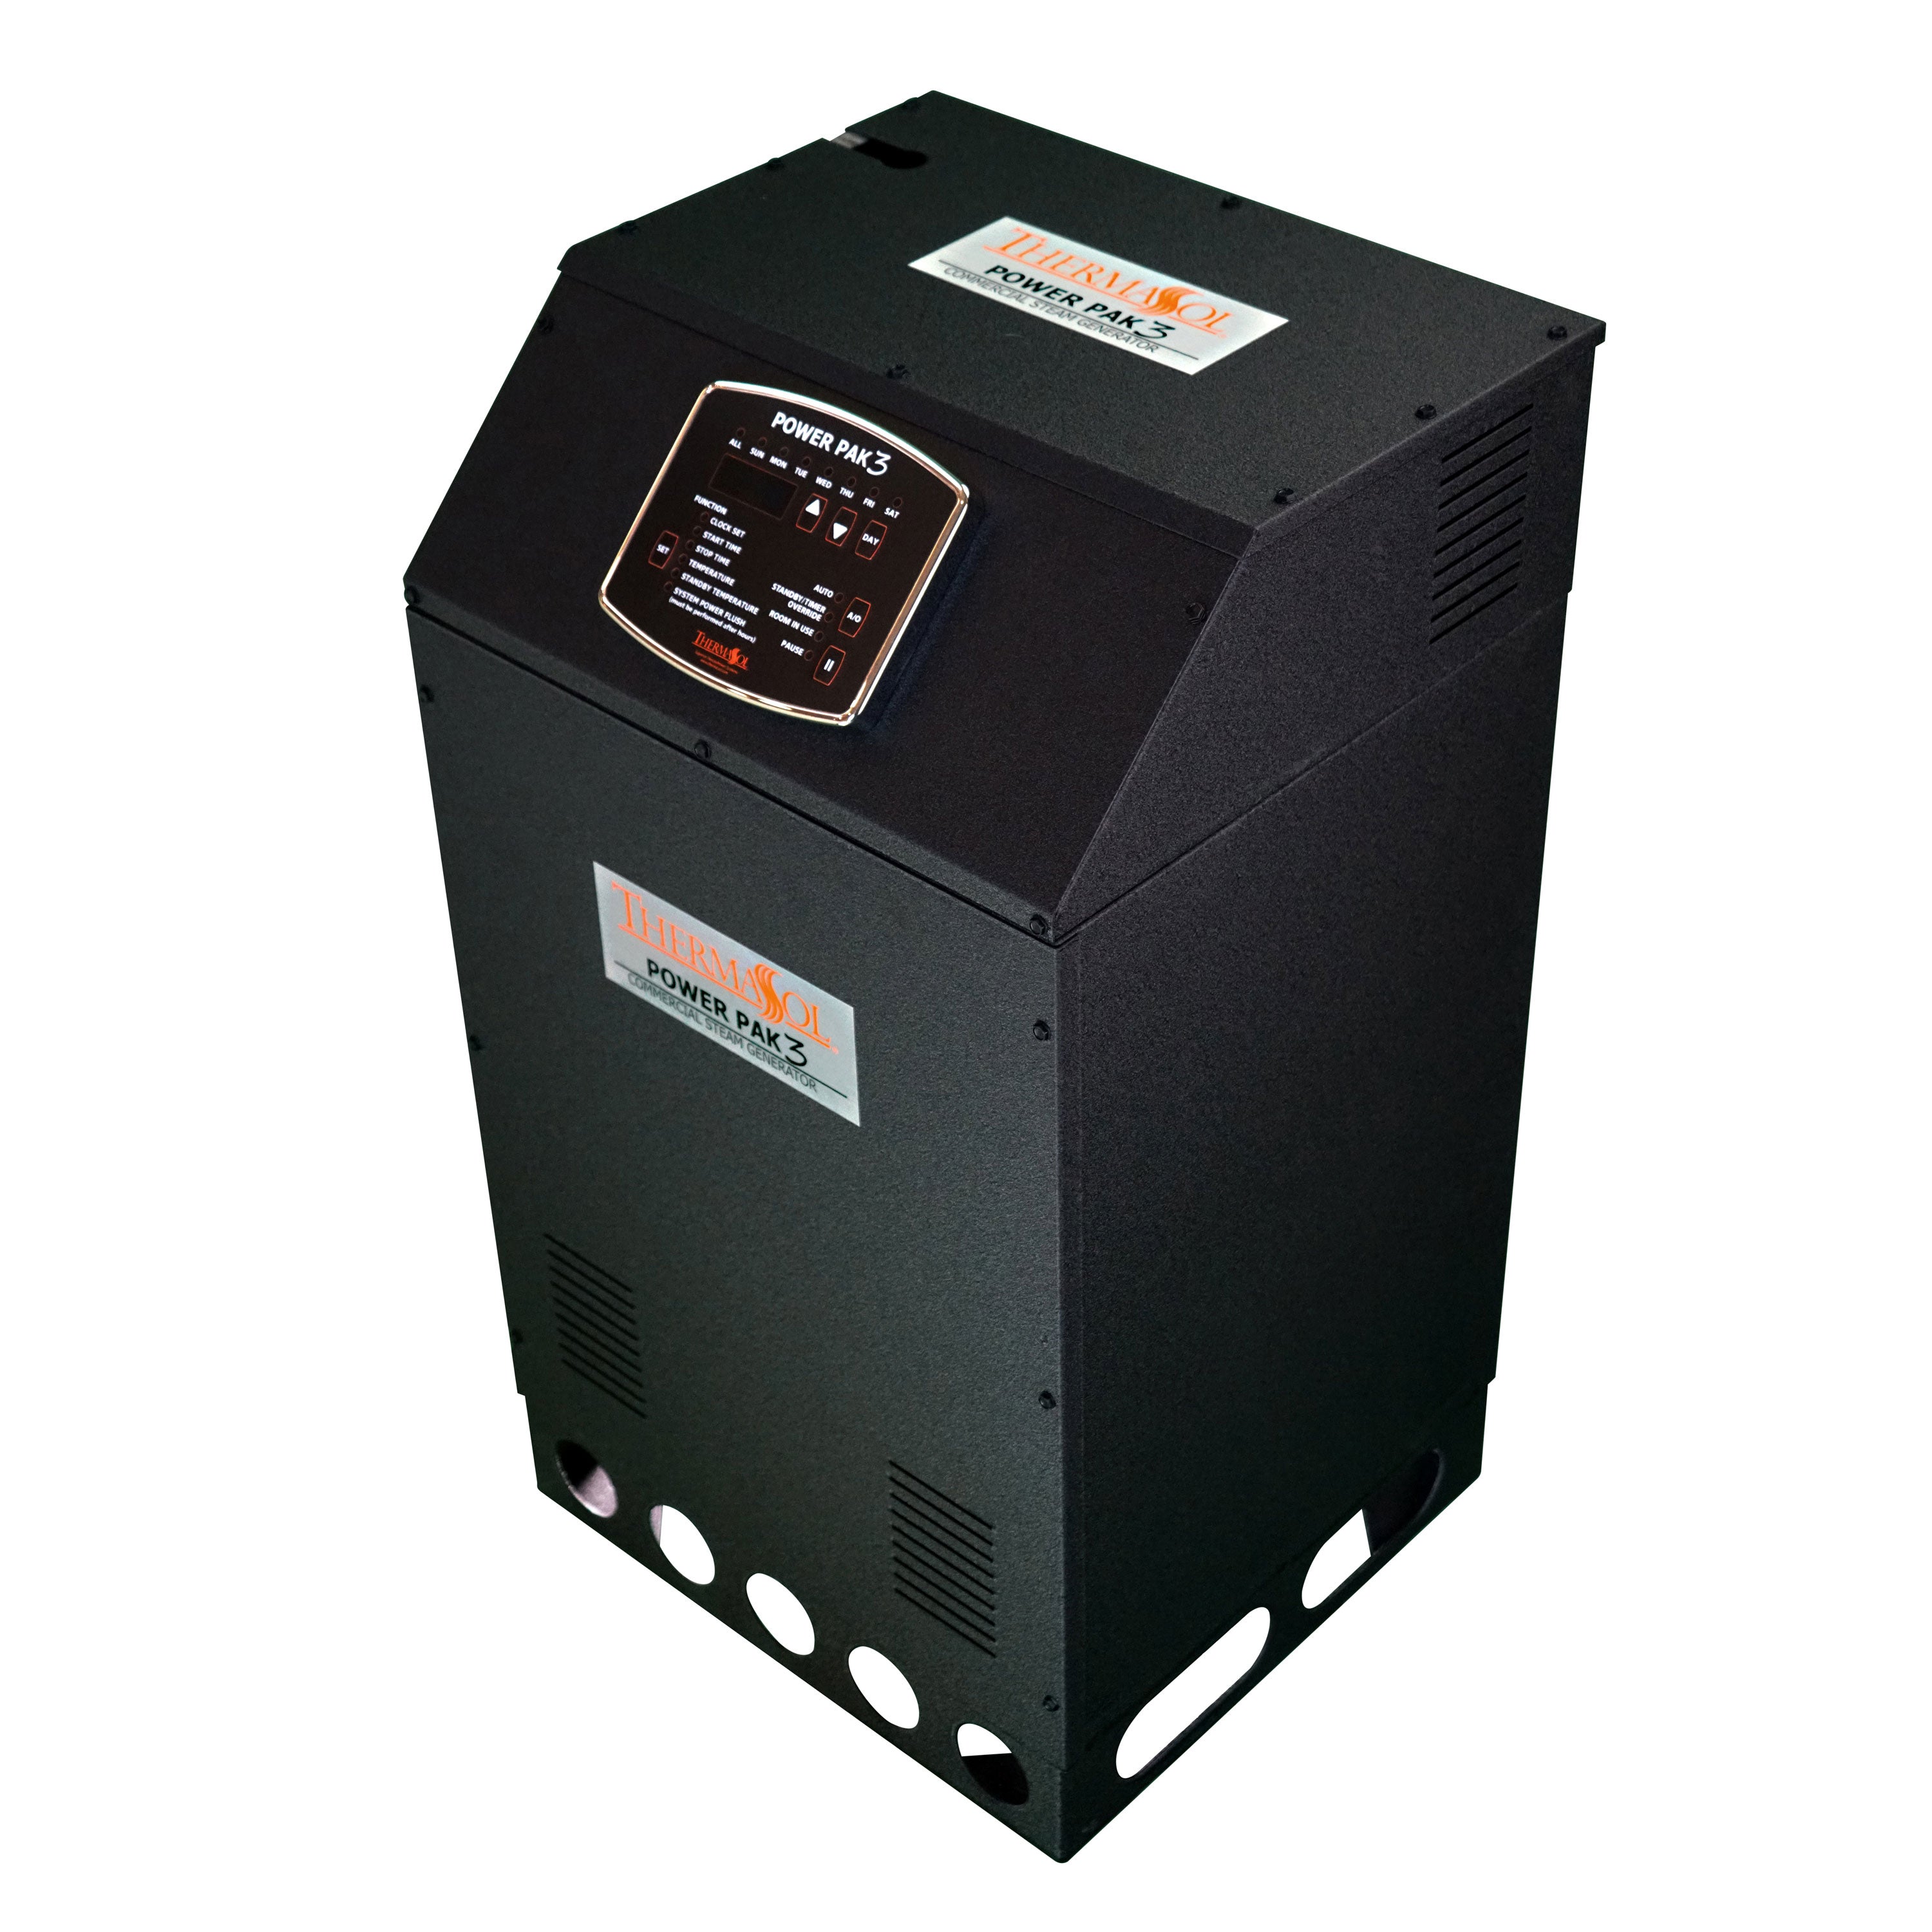 Thermasol Powerpak Series III Commercial Steam Generator - 24Lr-480